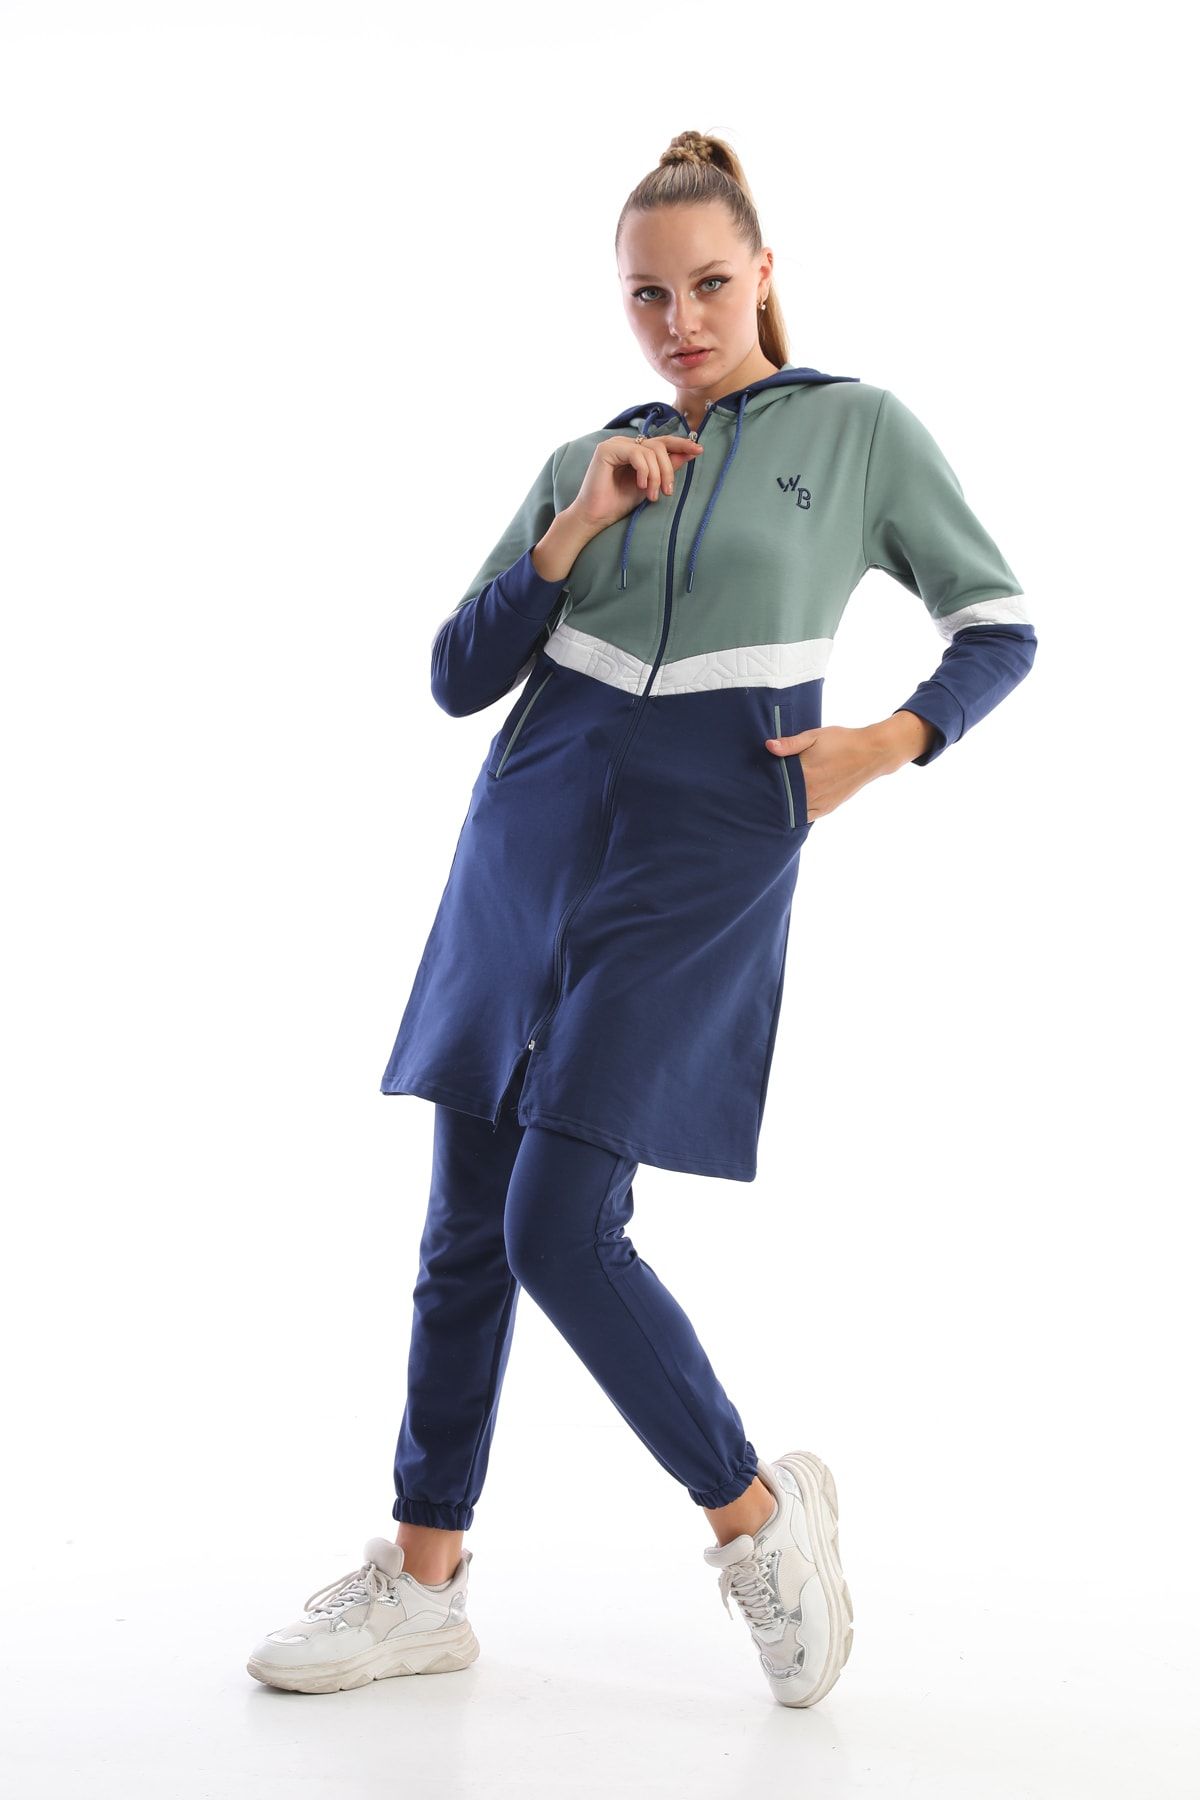 westbound Mint Lacivert Giyim Uzun Eşofman Takımı 3 Renk Şeritli Cepli Kapüşonlu